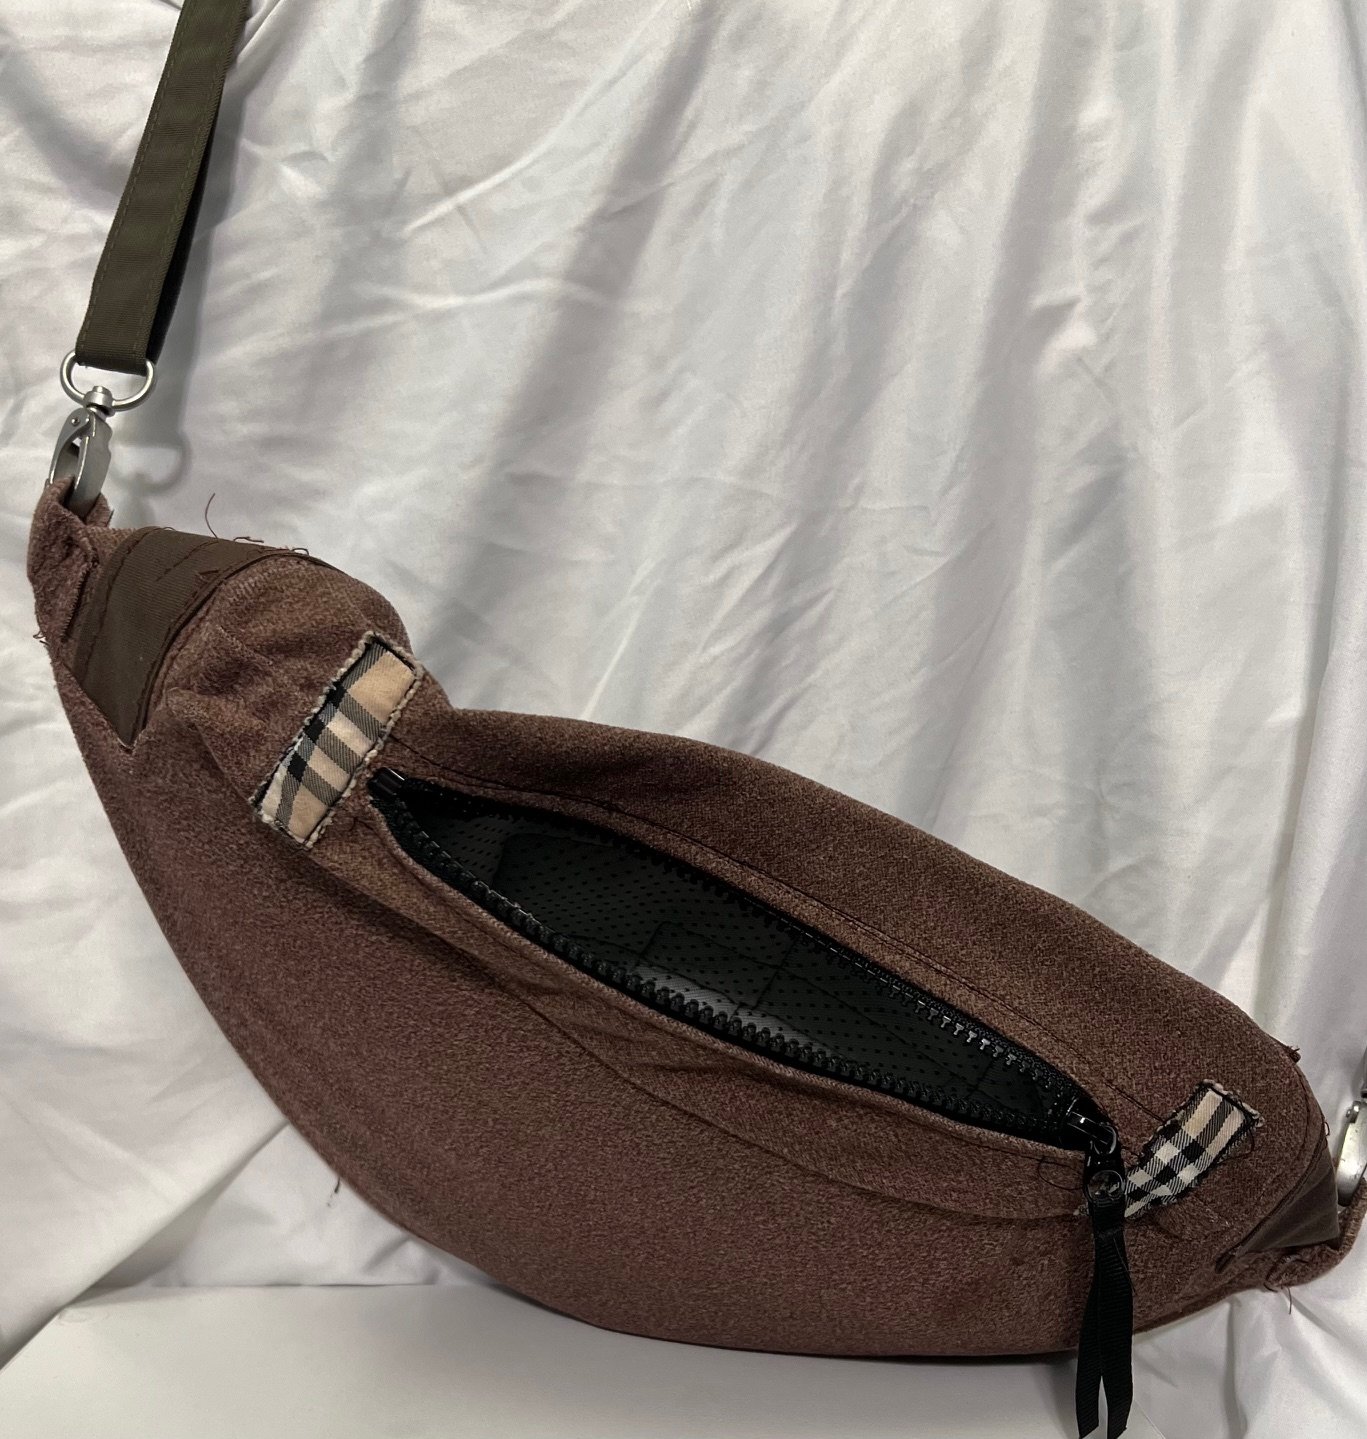 brown bag (different angle)